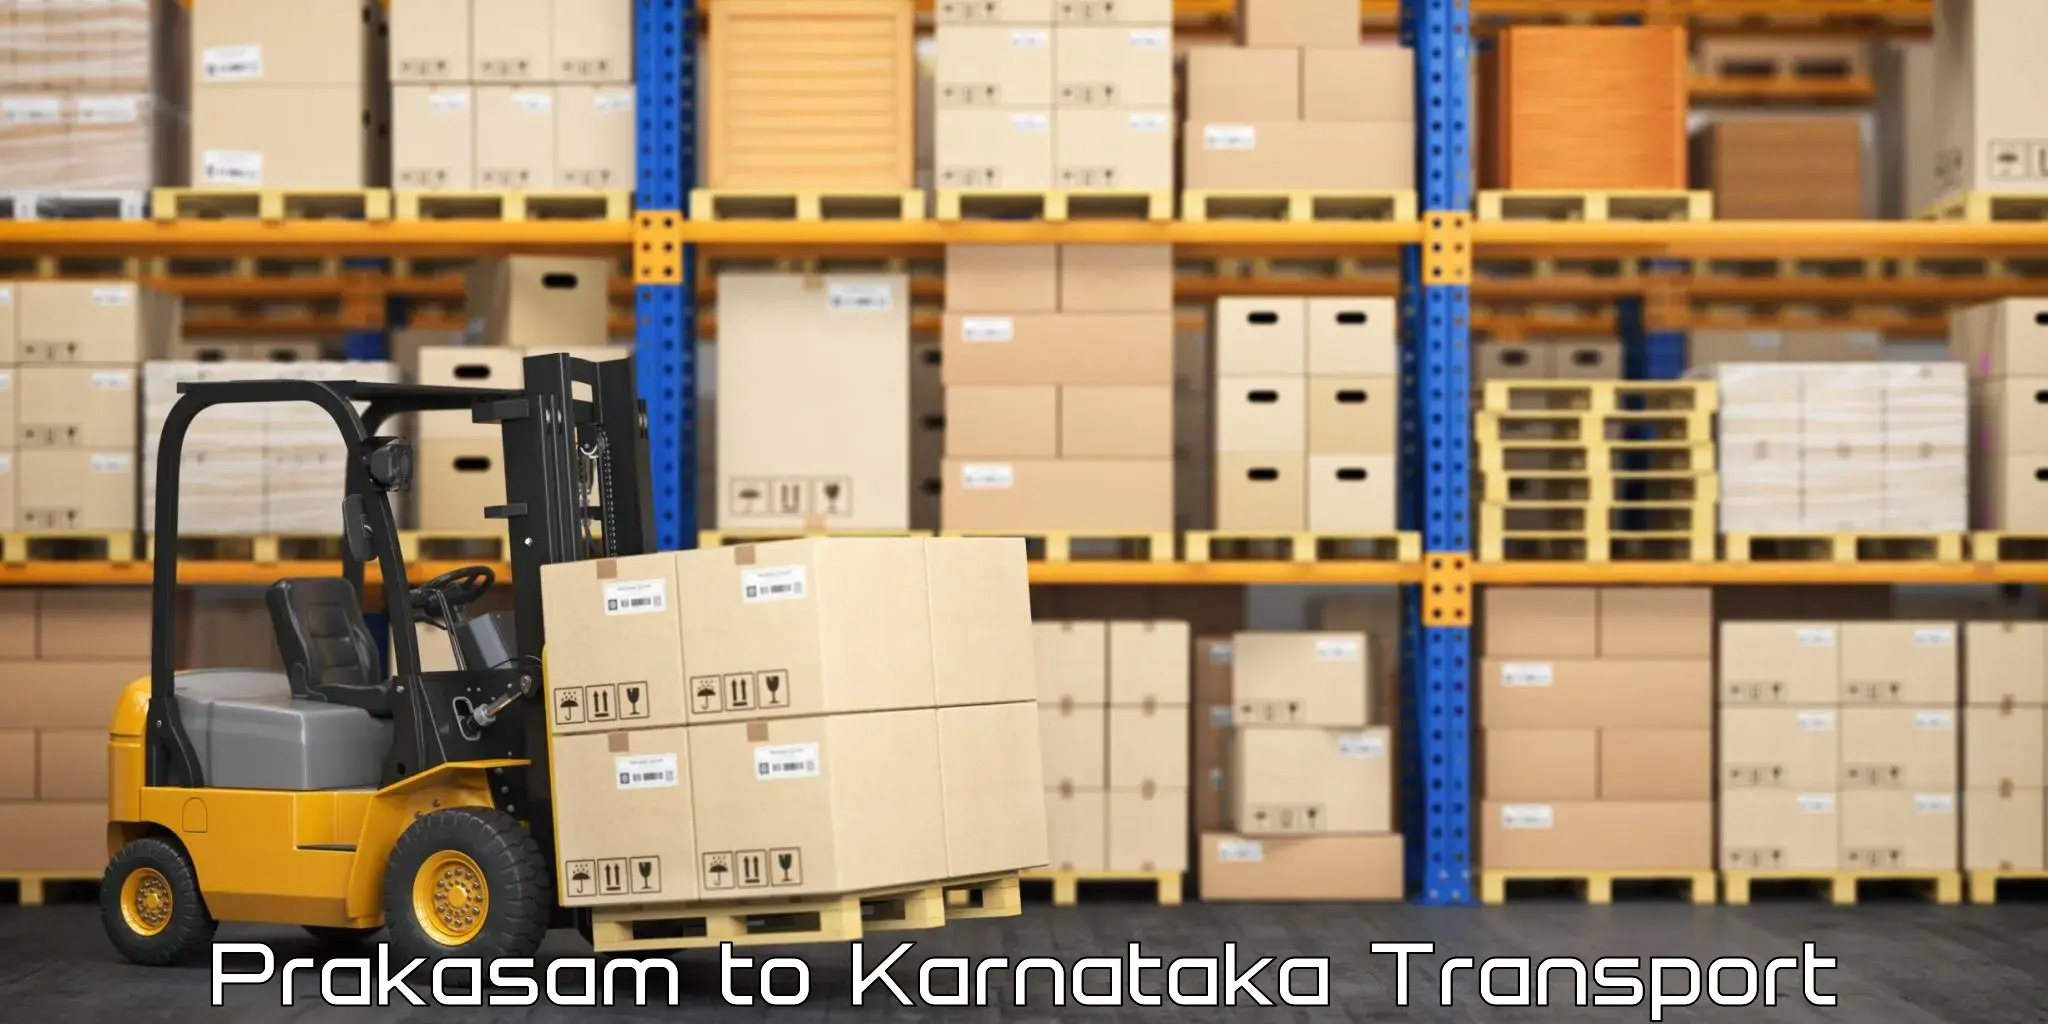 Truck transport companies in India Prakasam to Karnataka